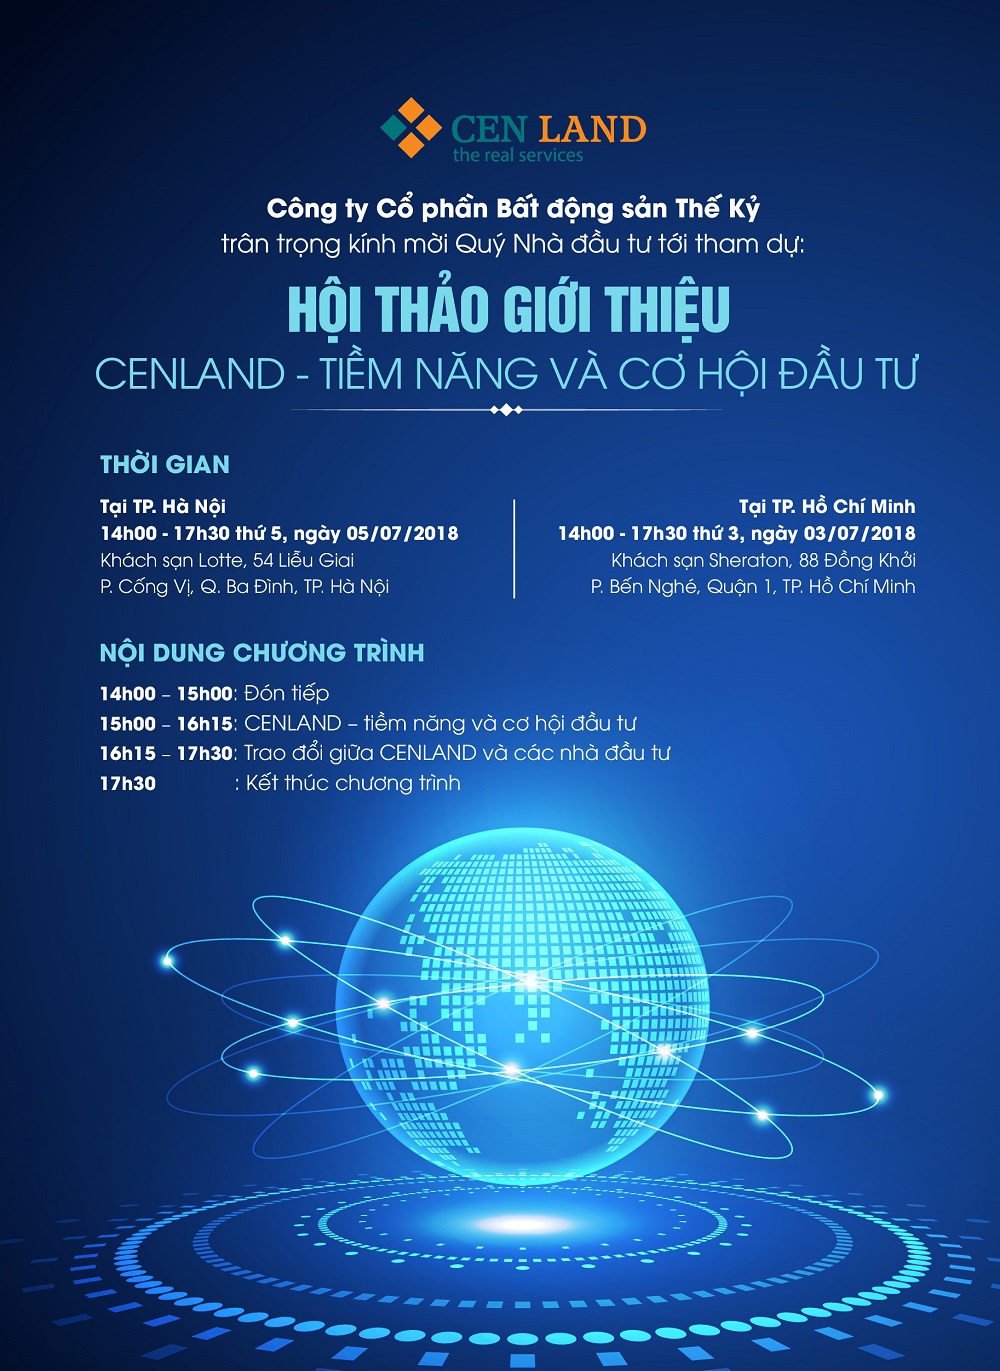 Hội thảo giới thiệu "CENLAND - Tiềm năng và cơ hội đầu tư" sẽ được tổ chức tại TP. Hồ Chí Minh và Hà Nội vào đầu tháng 7 tới.